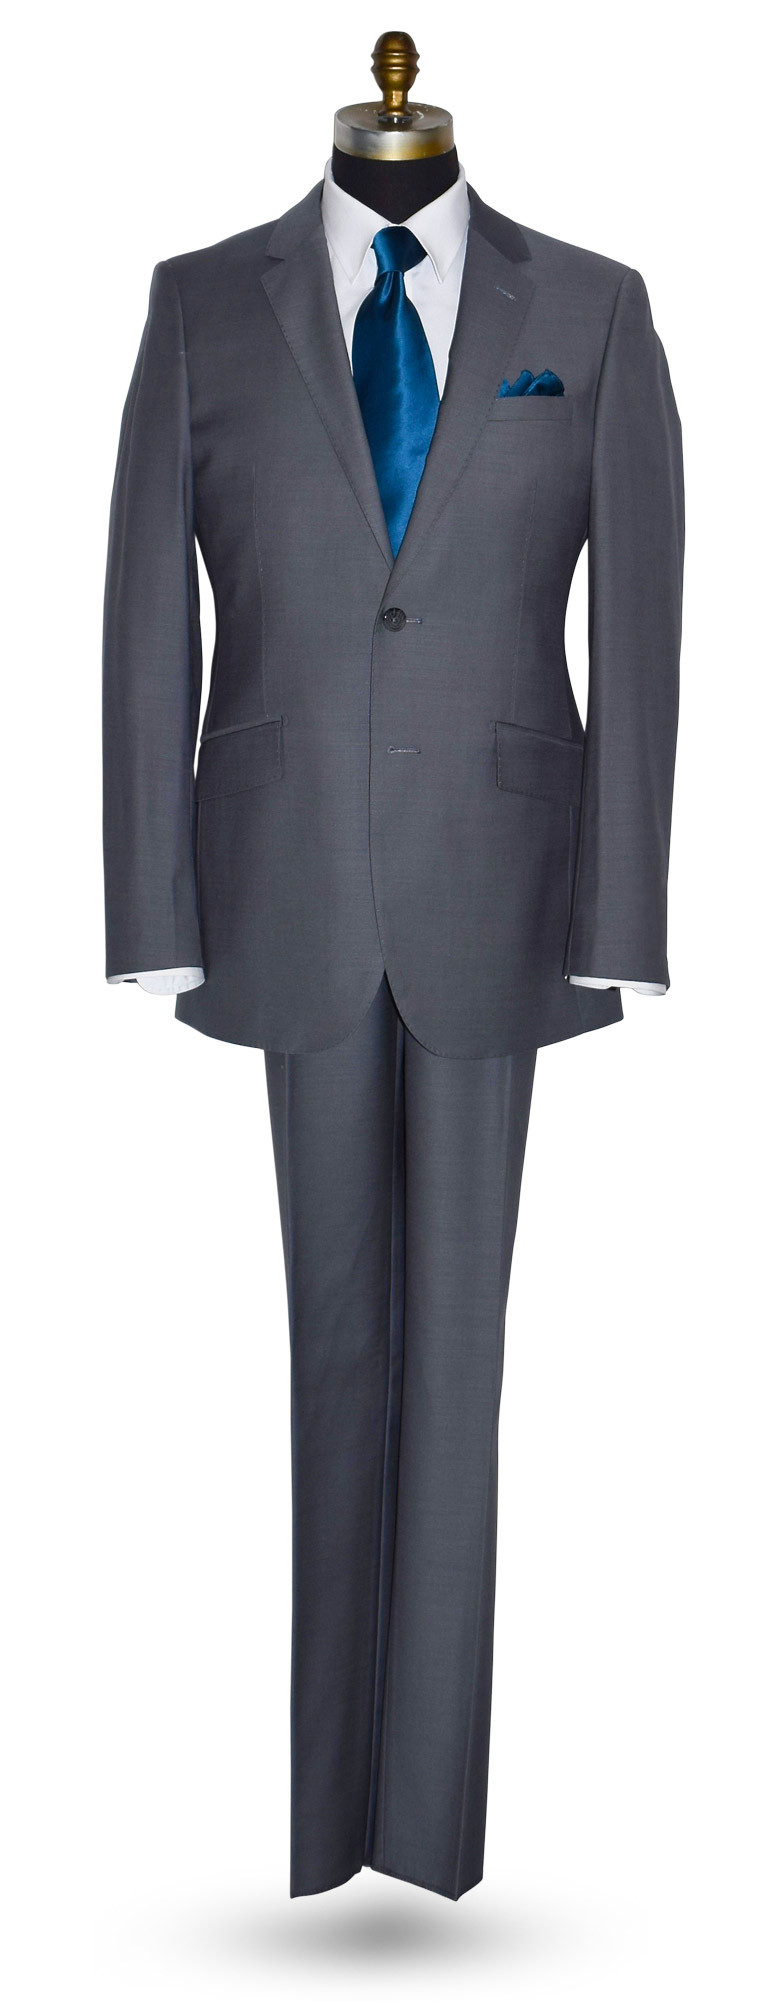 men's sapphire blue long tie and light gray suit